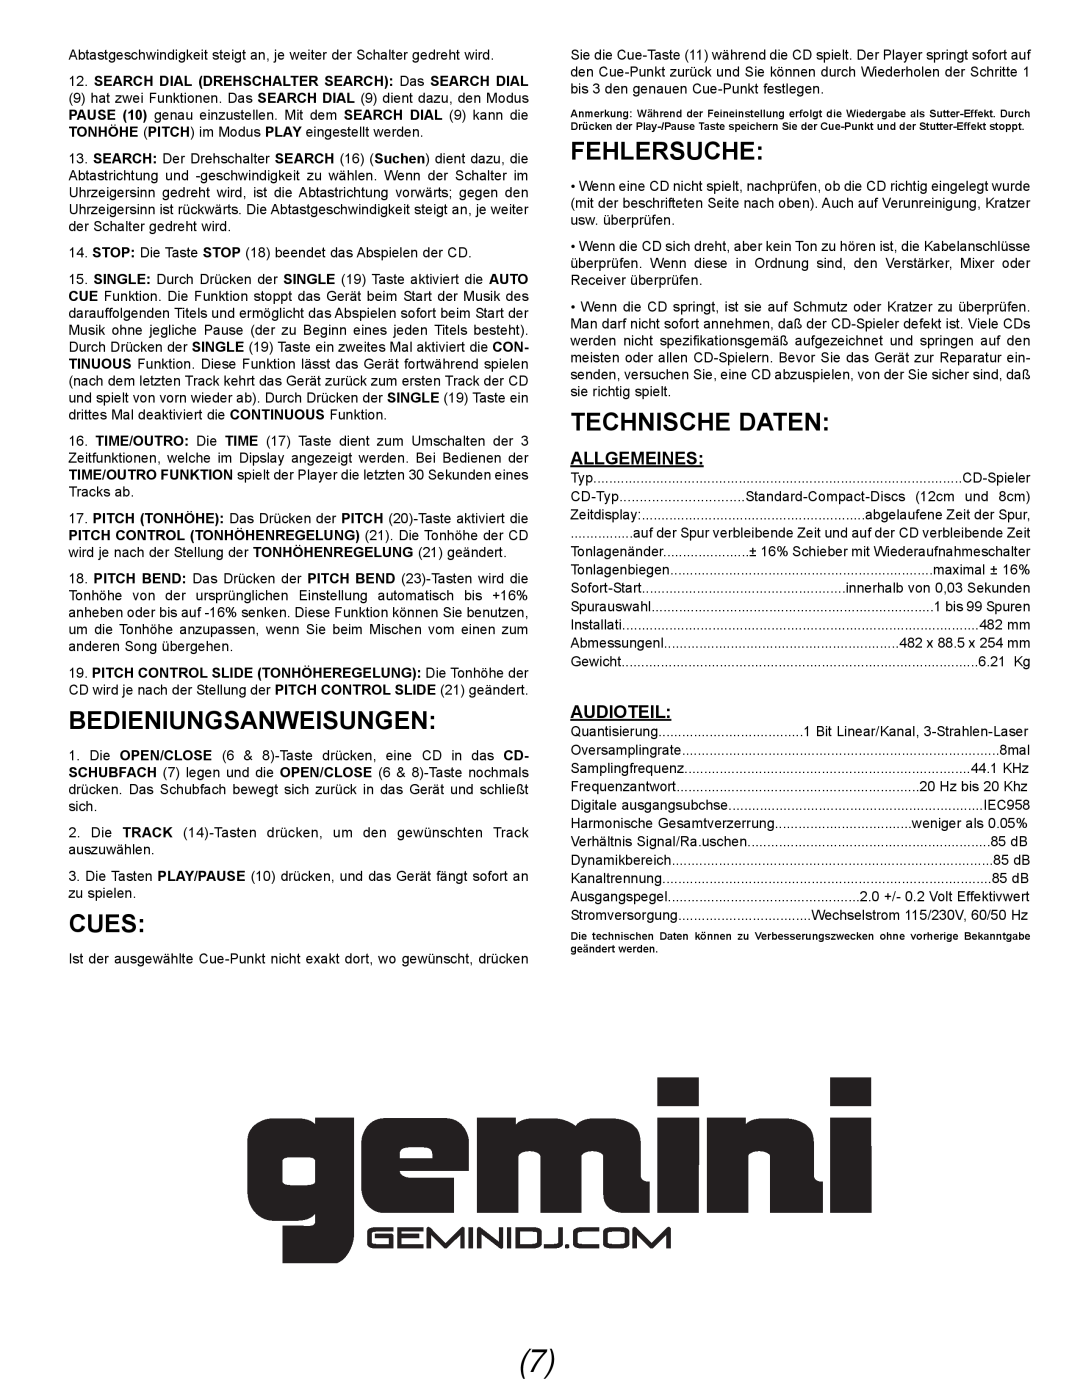 Gemini CDX-02G manual Bedieniungsanweisungen, Fehlersuche, Technische Daten, Allgemeines, Audioteil, Cues 